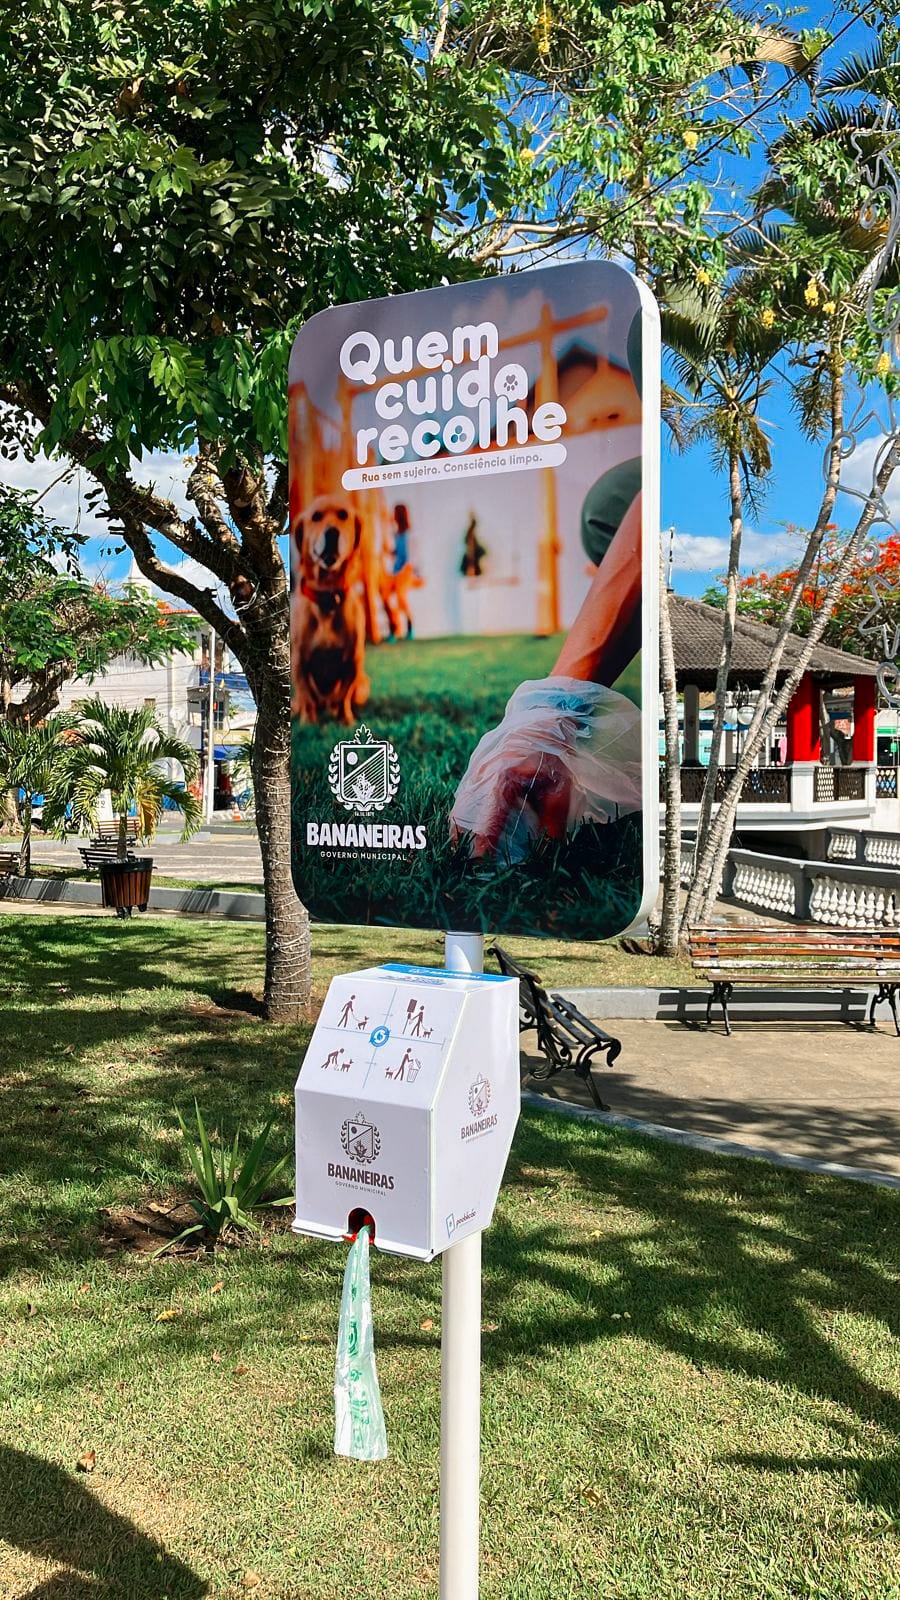 Prefeitura lança a Campanha “Quem cuida recolhe” e instala dispensers cata caca, em locais estratégicos do município